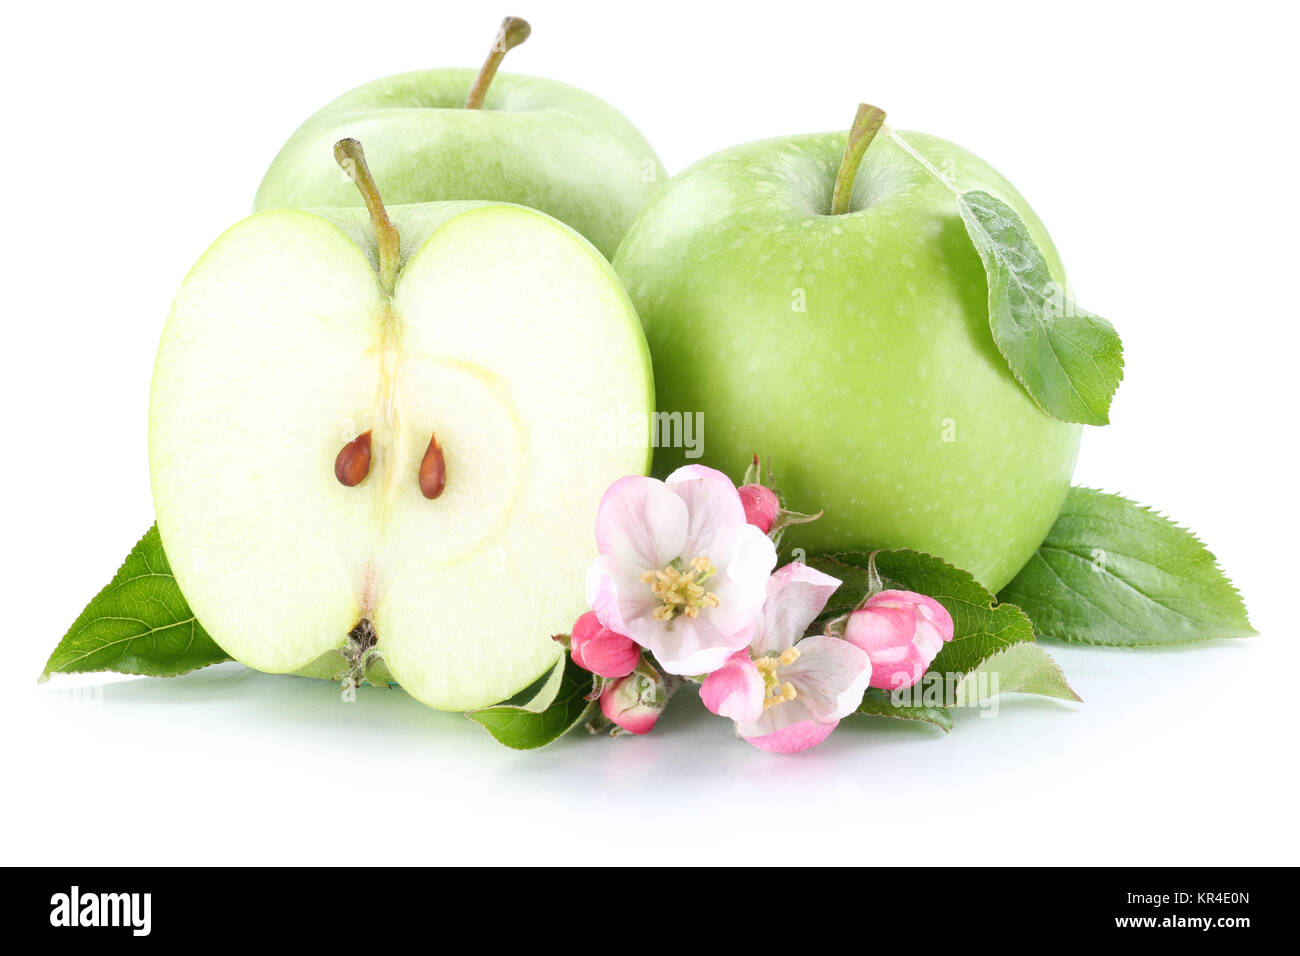 Apfel Äpfel Frucht frische Früchte Obst grün Freisteller freigestellt isoliert vor einem weissen Hintergrund Stock Photo